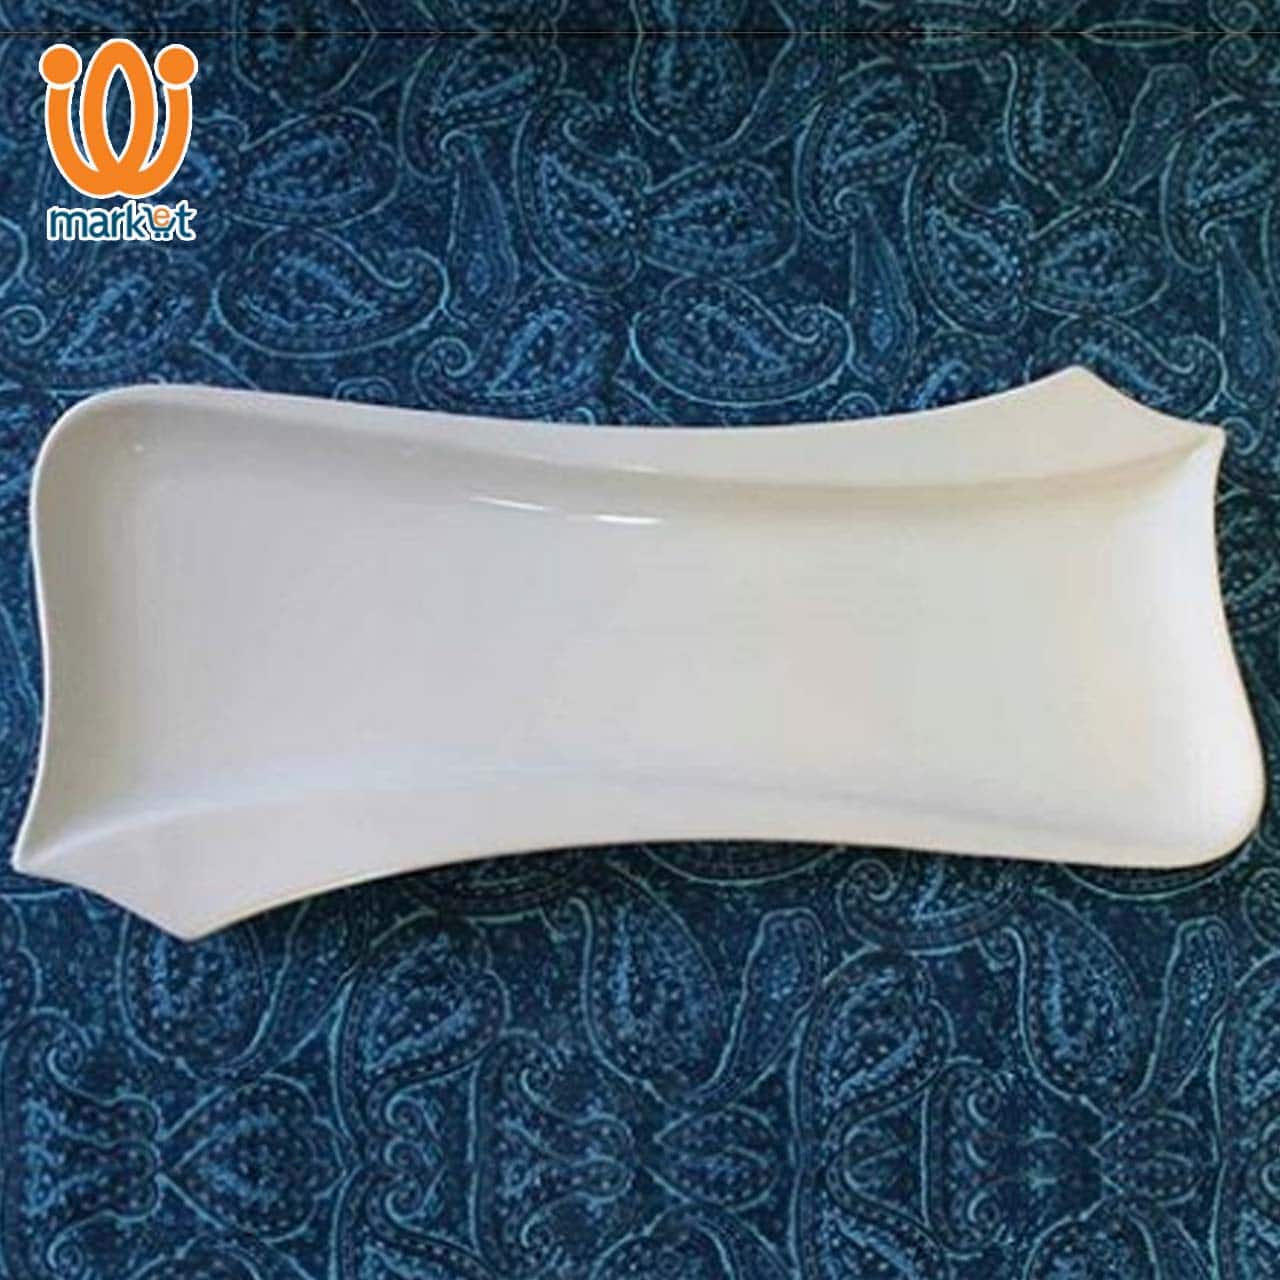 مدل ظروف سرامیکی سفید ایرانی
